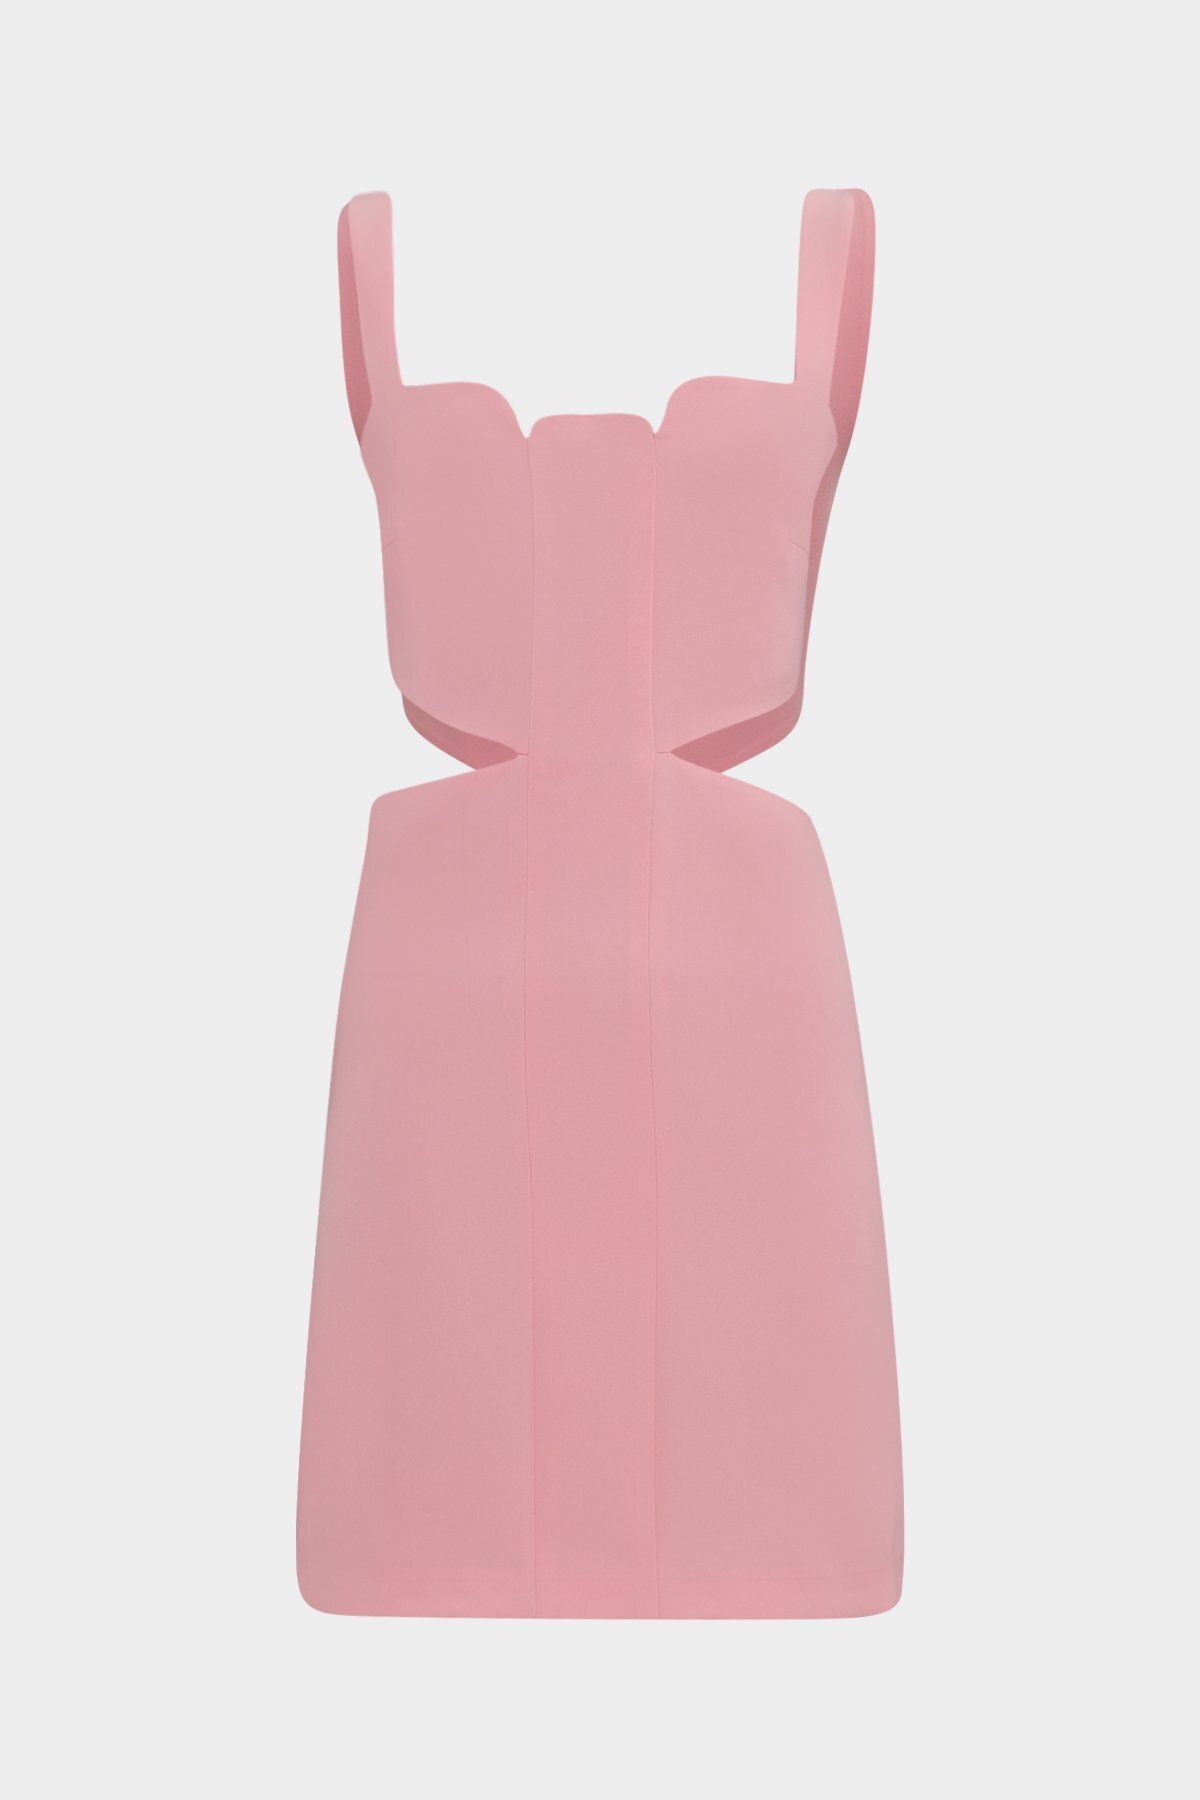 Açelya Okcu Premium Askılı Yanı Pencereli Mini Dokuma Kadın Elbise